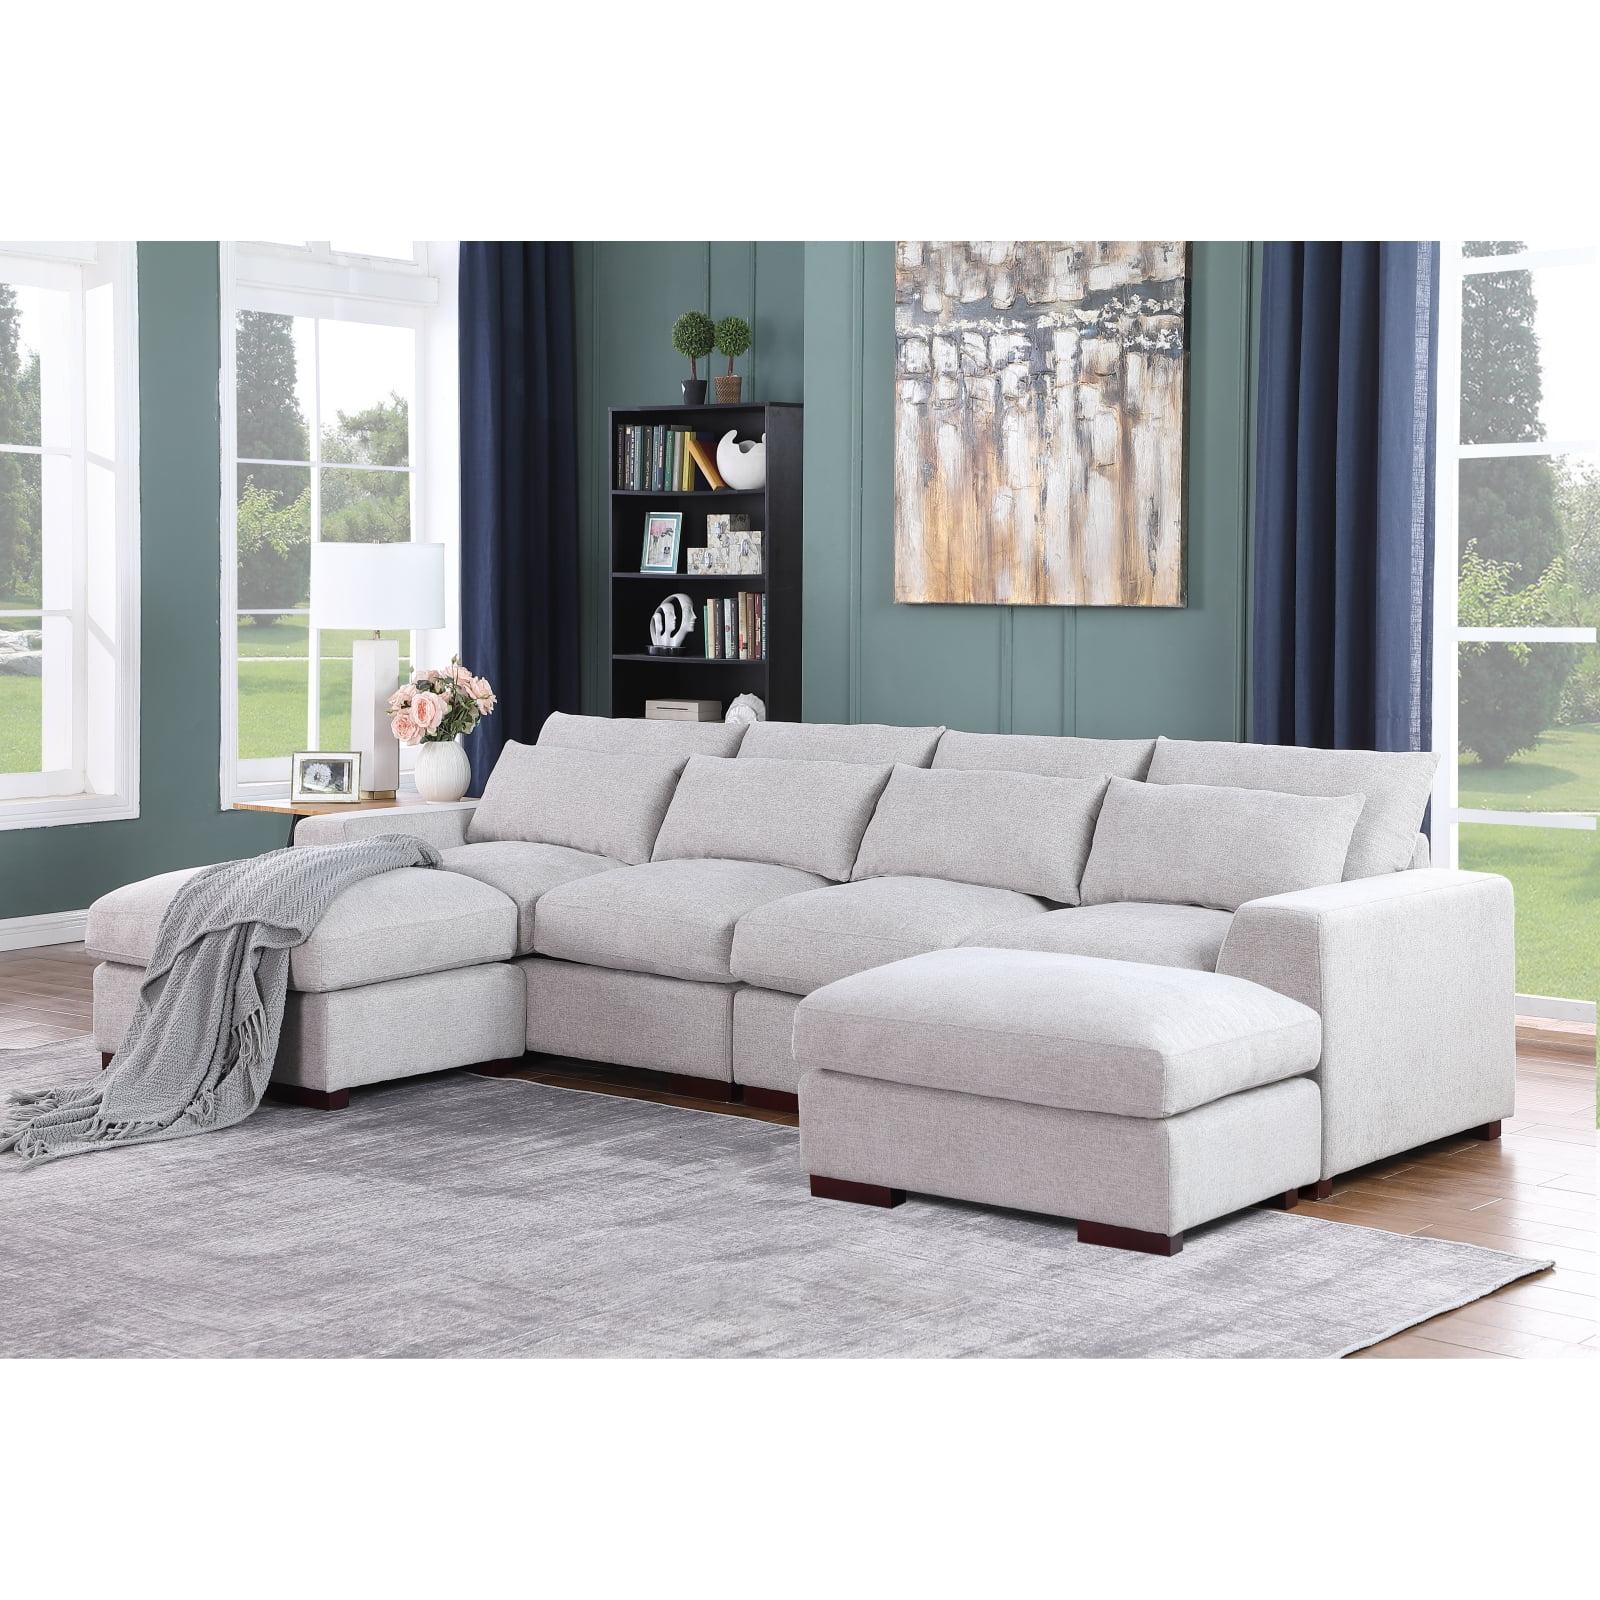 Light Gray Linen-Blend Modular Sectional Sofa with Ottoman